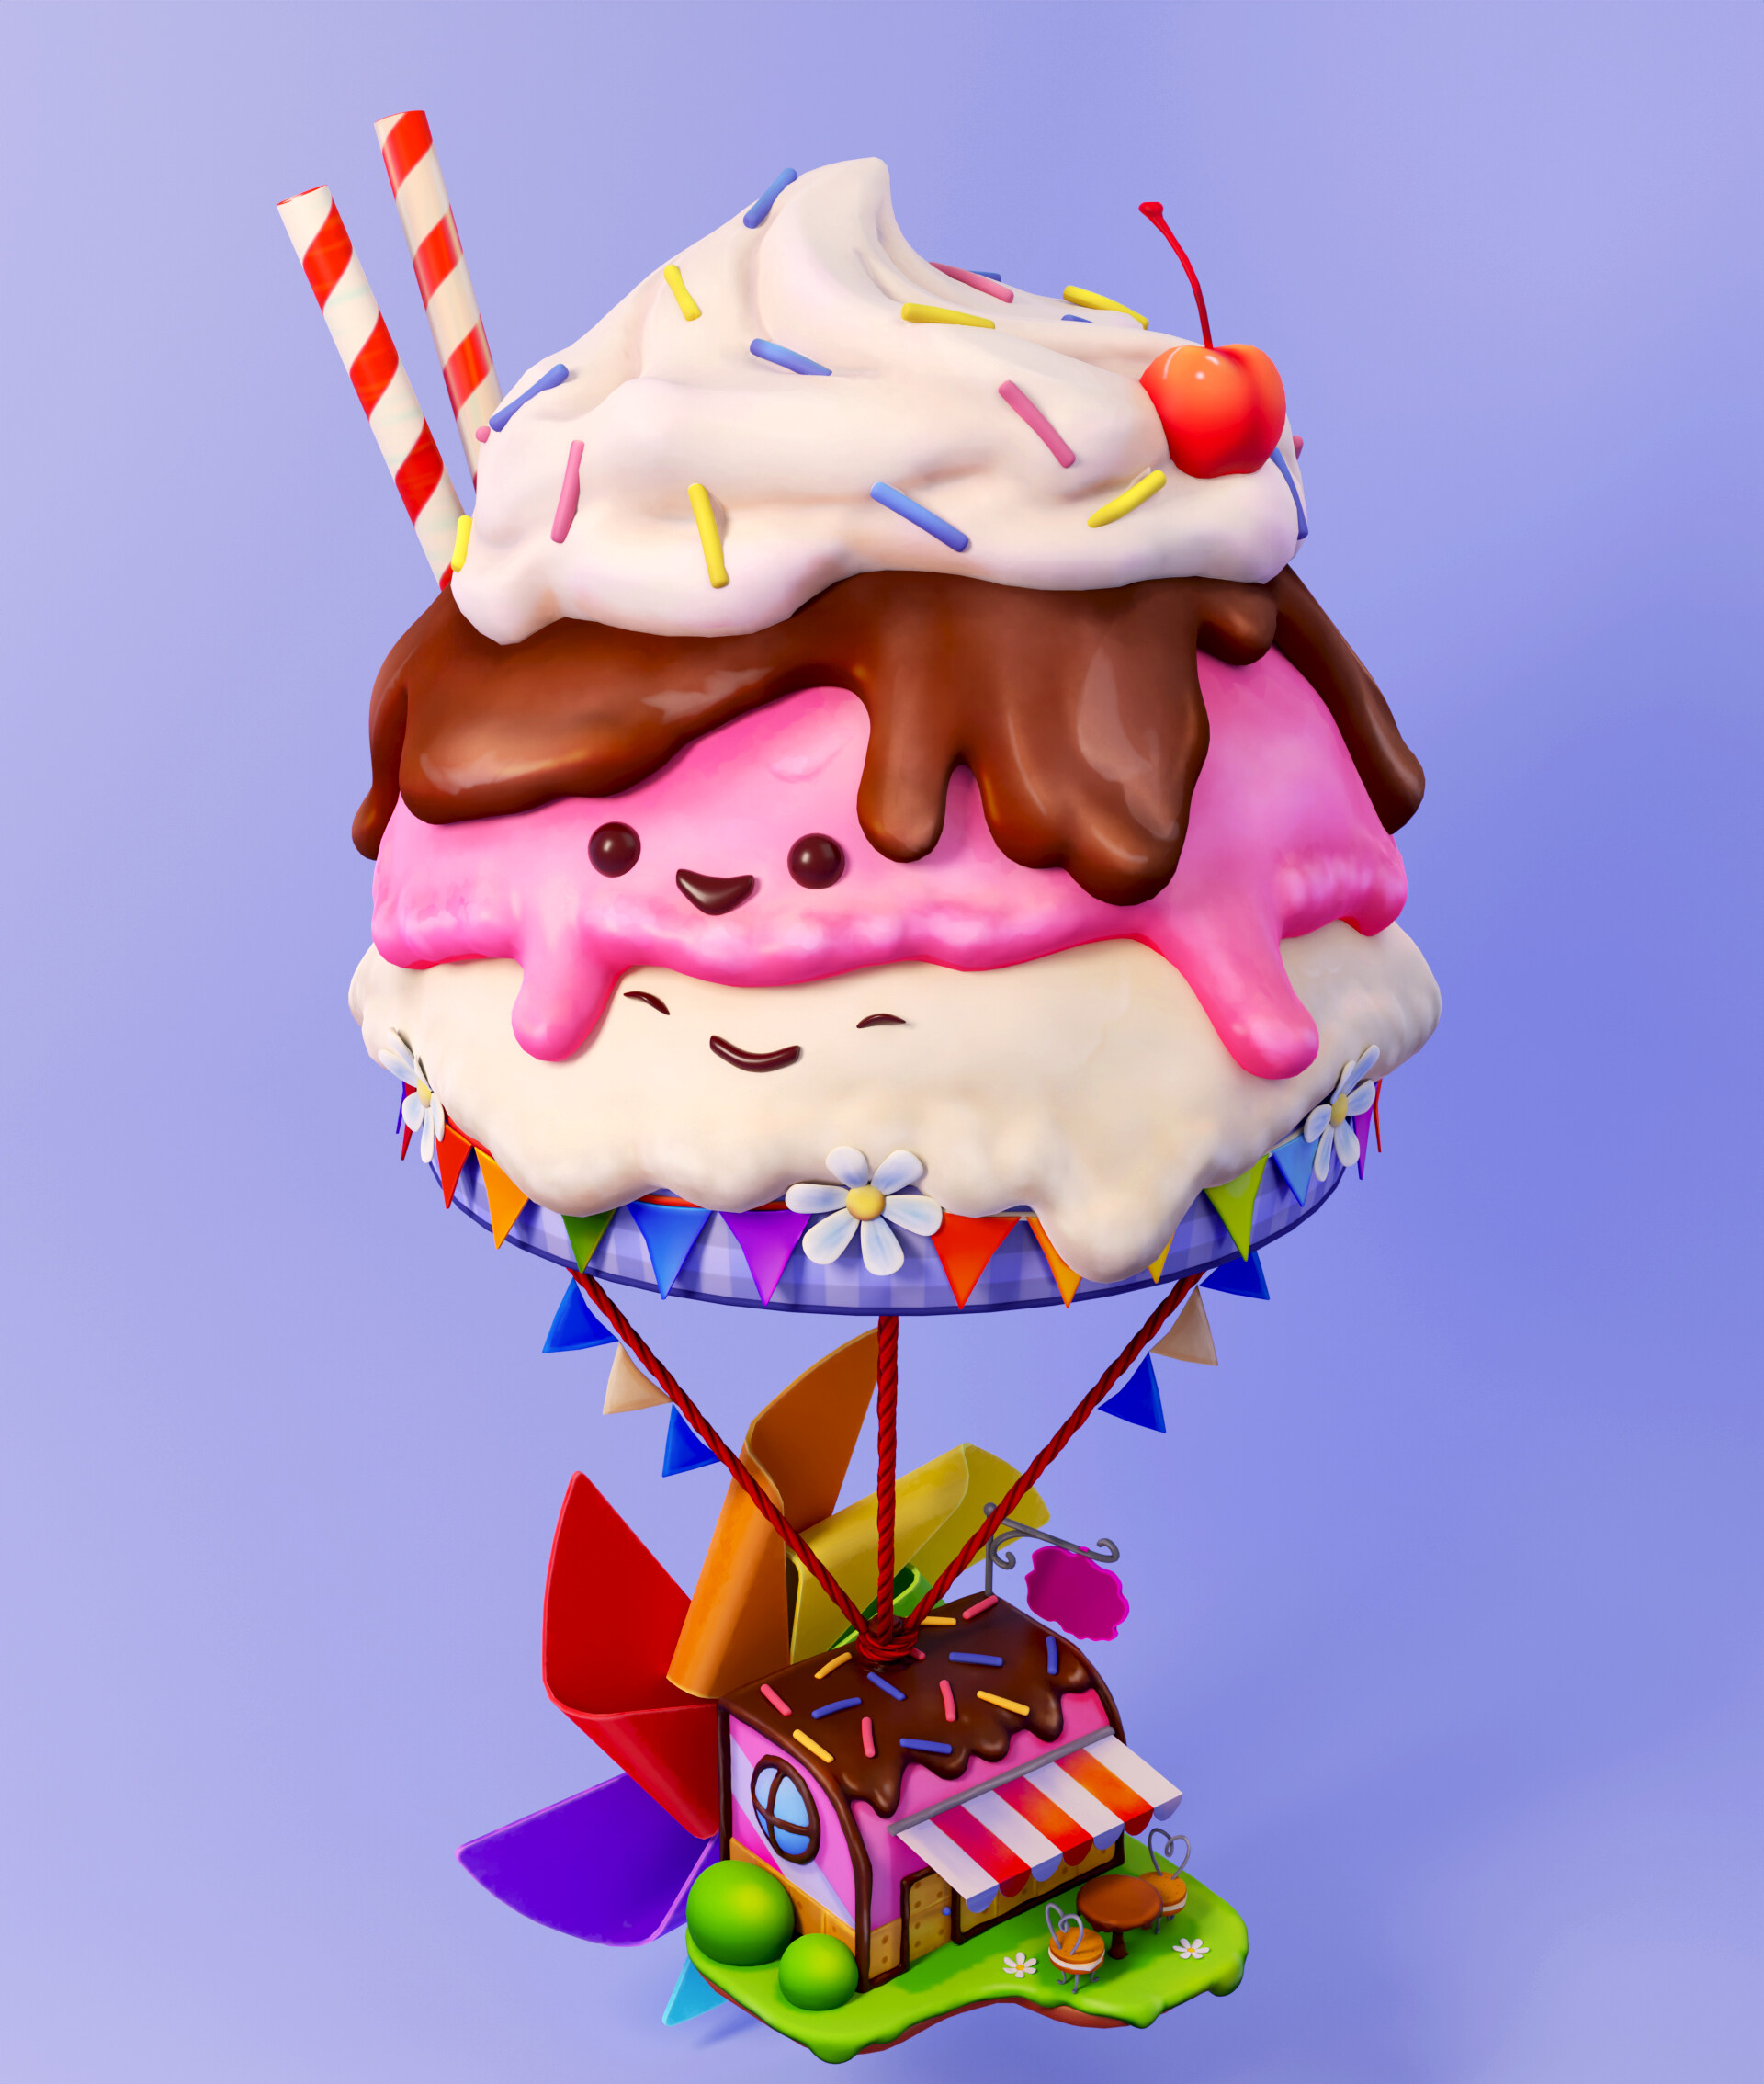 ArtStation - Tasty! Ice Cream Balloon